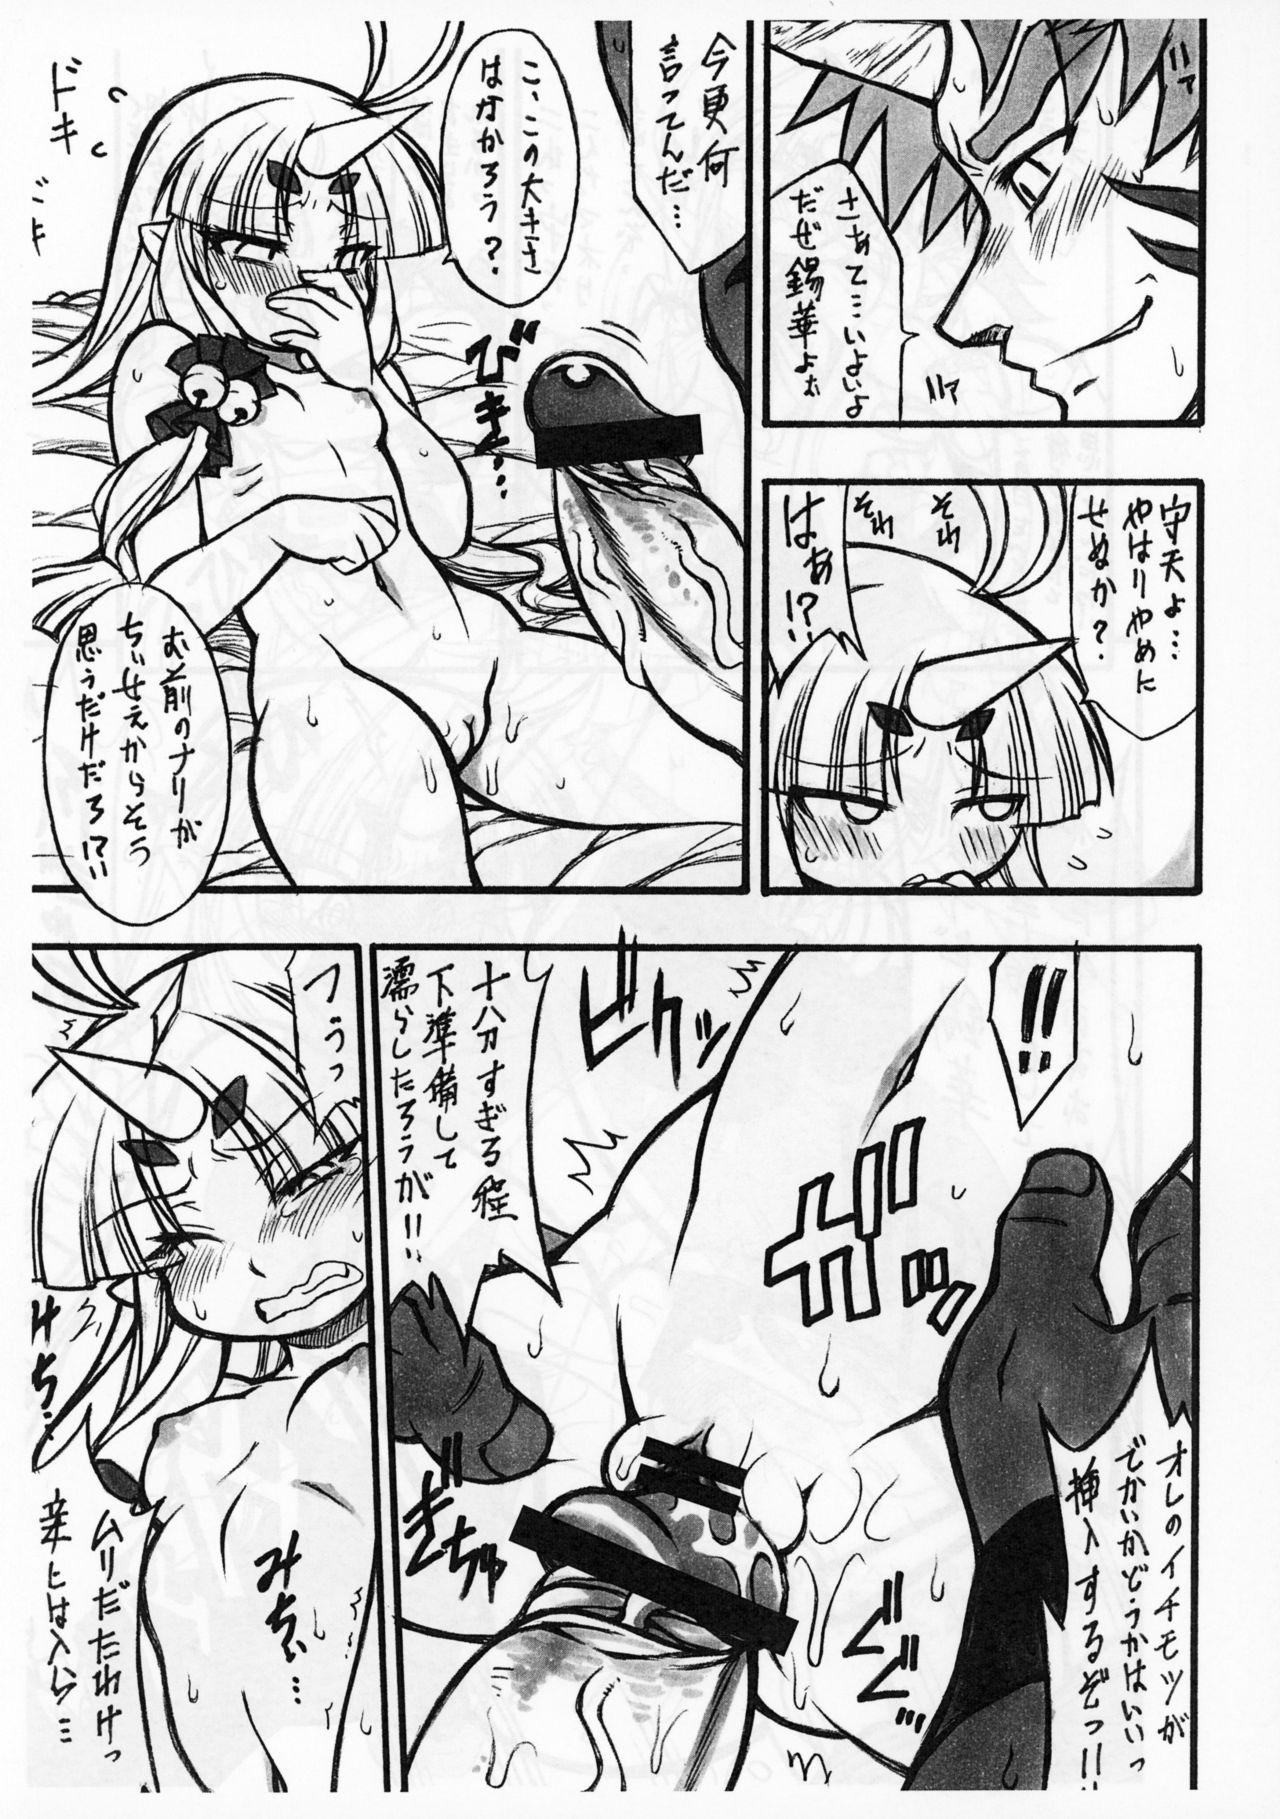 Hot Milf Suzuka Damashii - Super robot wars Bed - Page 3